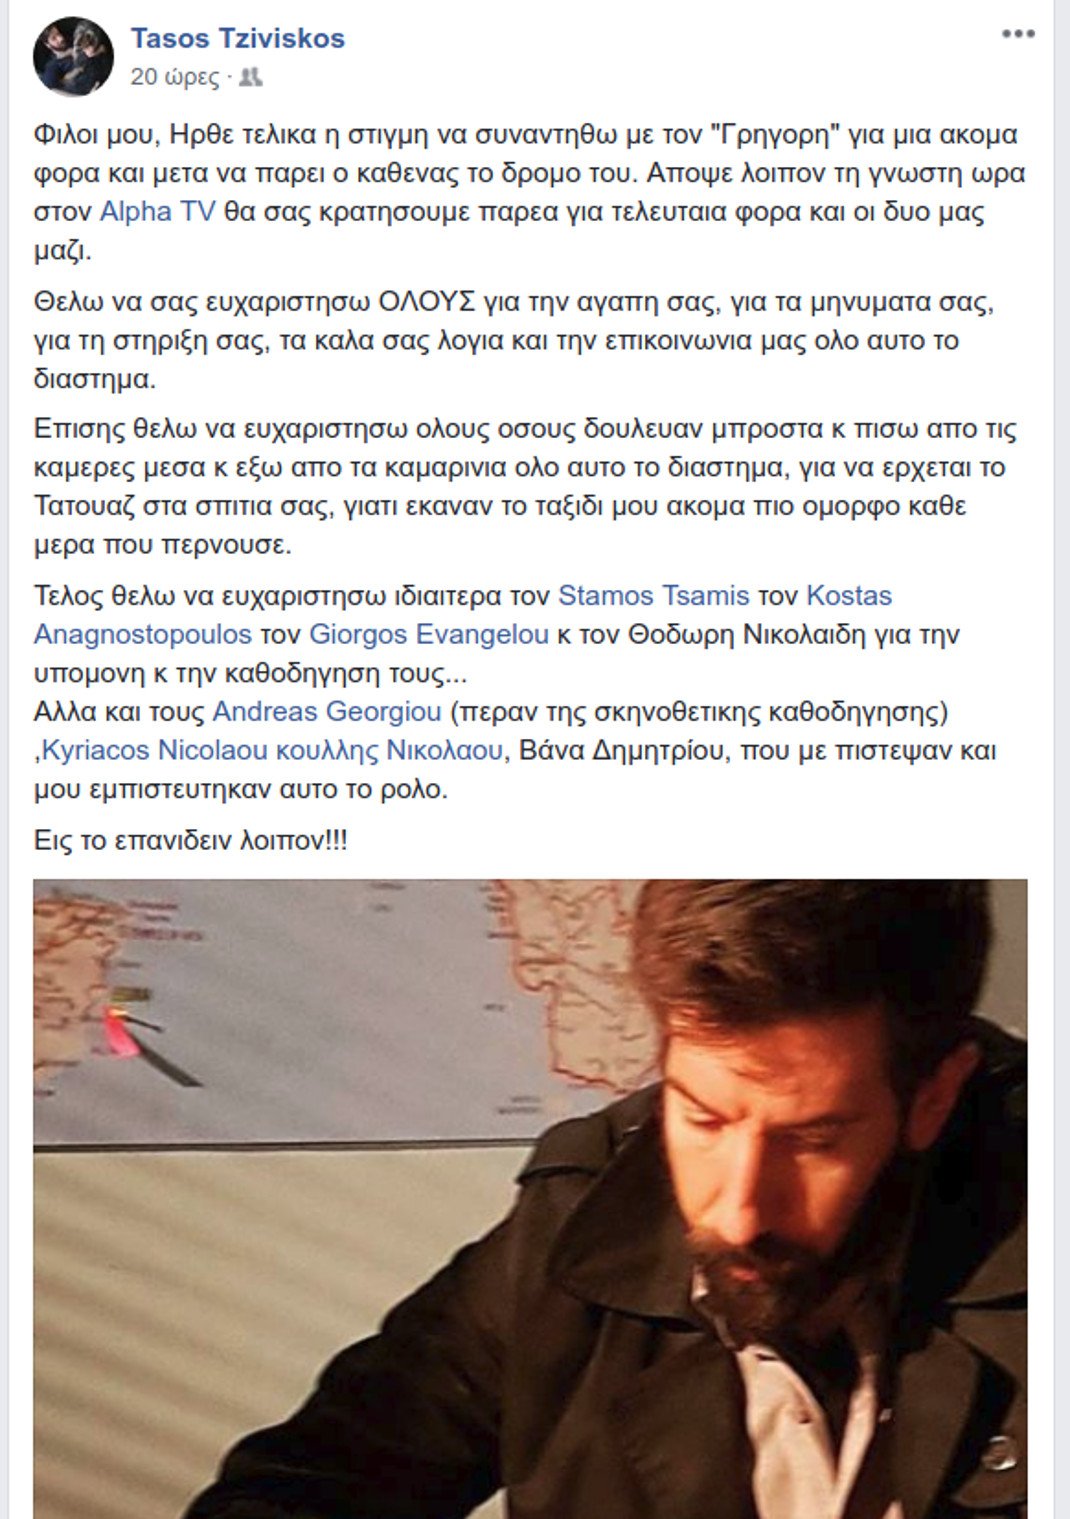 Tasos Tziviskos facebook